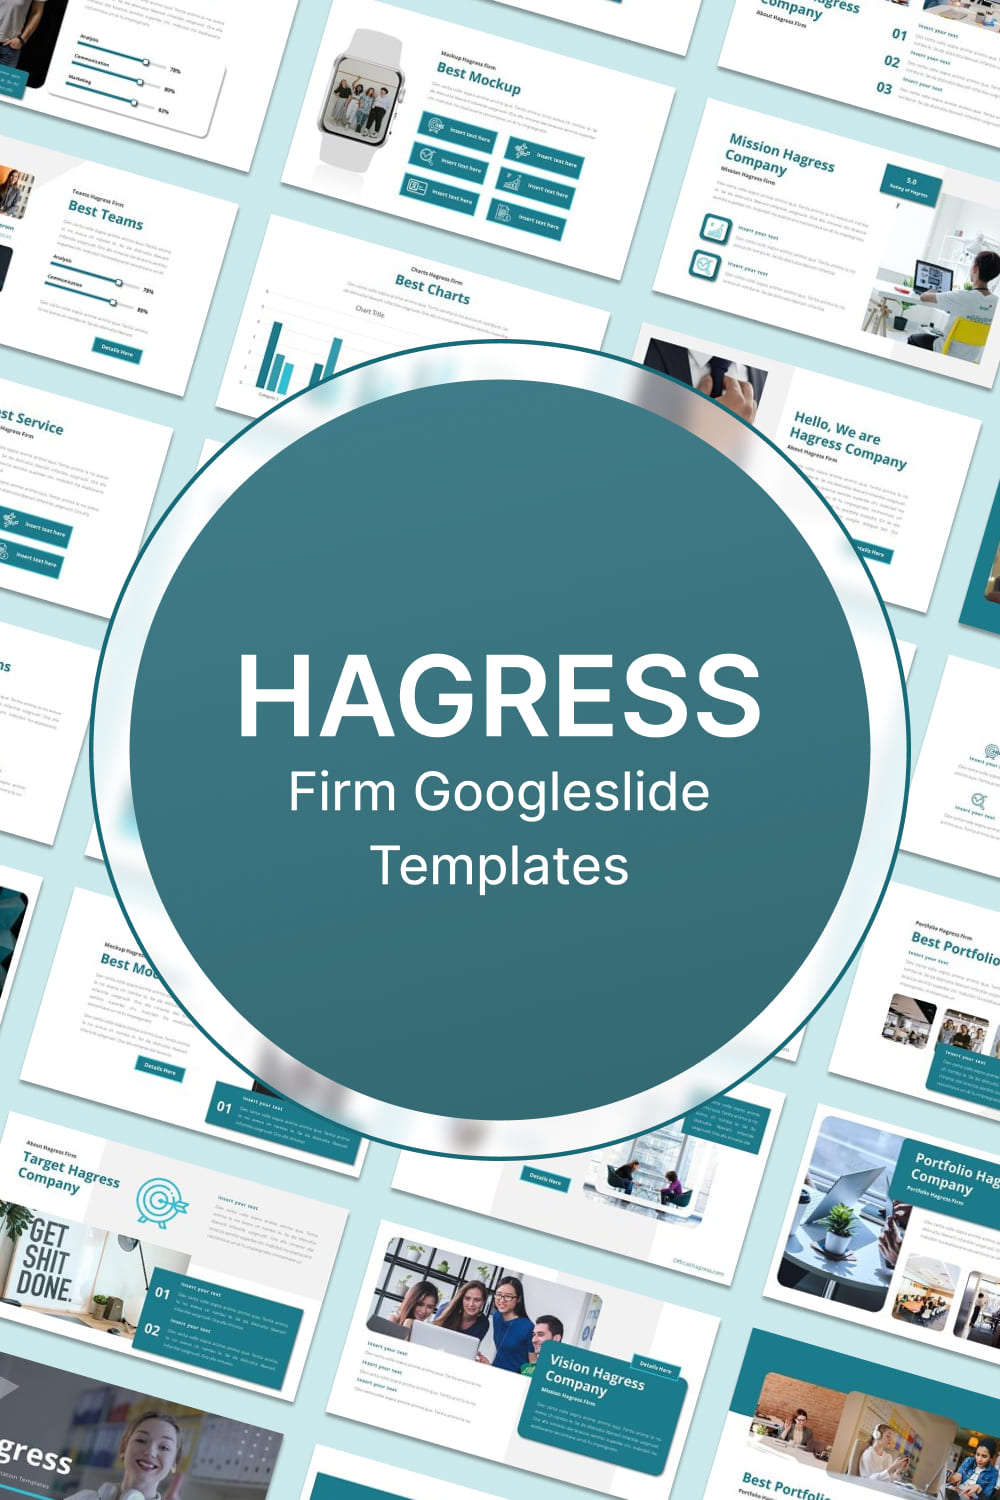 hagress firm googleslide templates 02 173